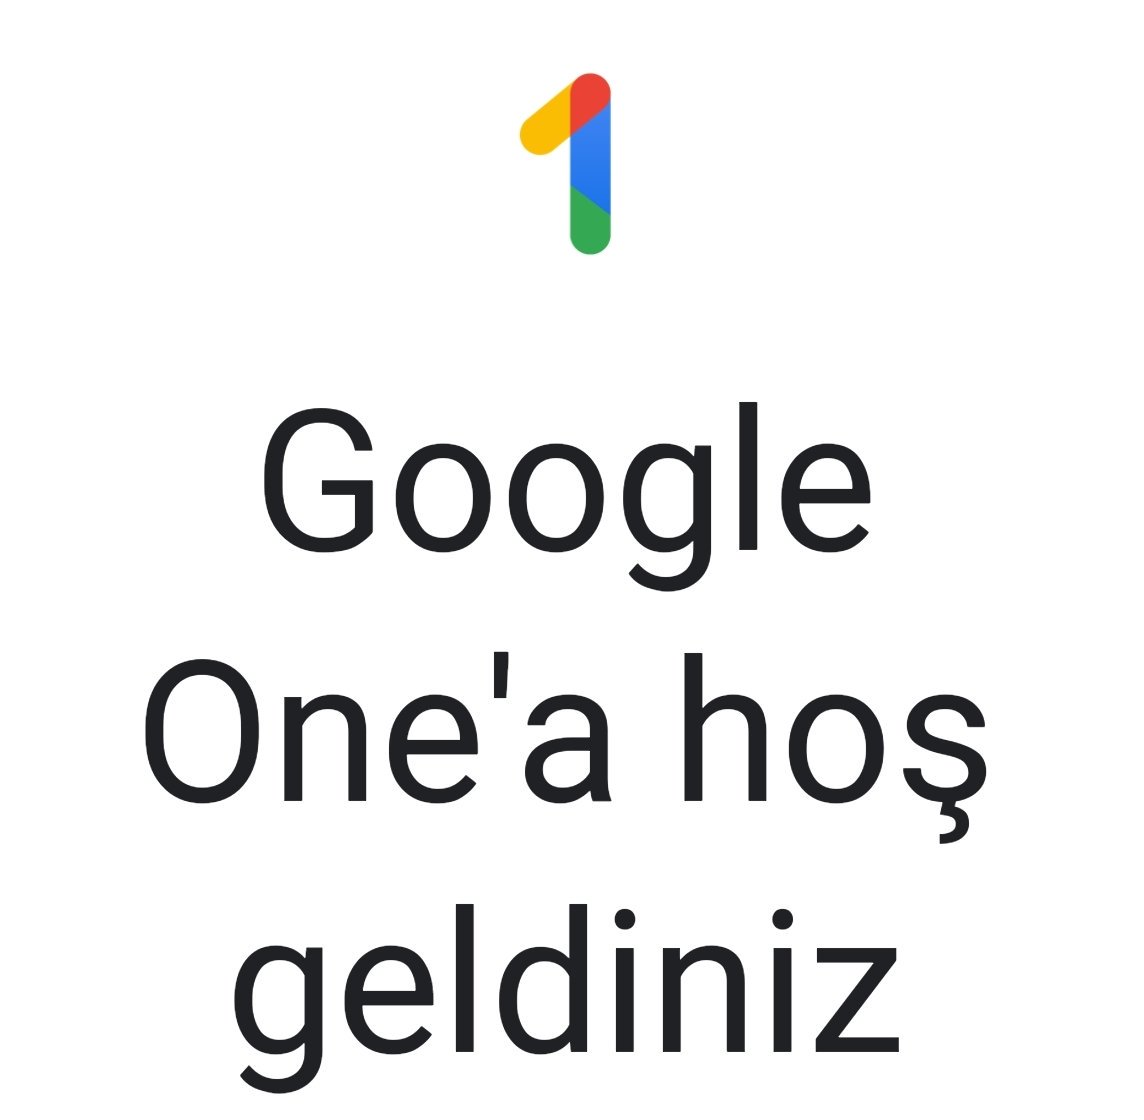 Google One, ücretli Google Drive kullanıcıları için hizmete sunuldu. Önümüzdeki aylarda diğer kullanıcılar da dahil edilecek. Ücretli kullanıcılar için Google ürünleriyle ilgili ücretsiz danışma hizmeti ve bulut depolama alanı aile paylaşımı var.